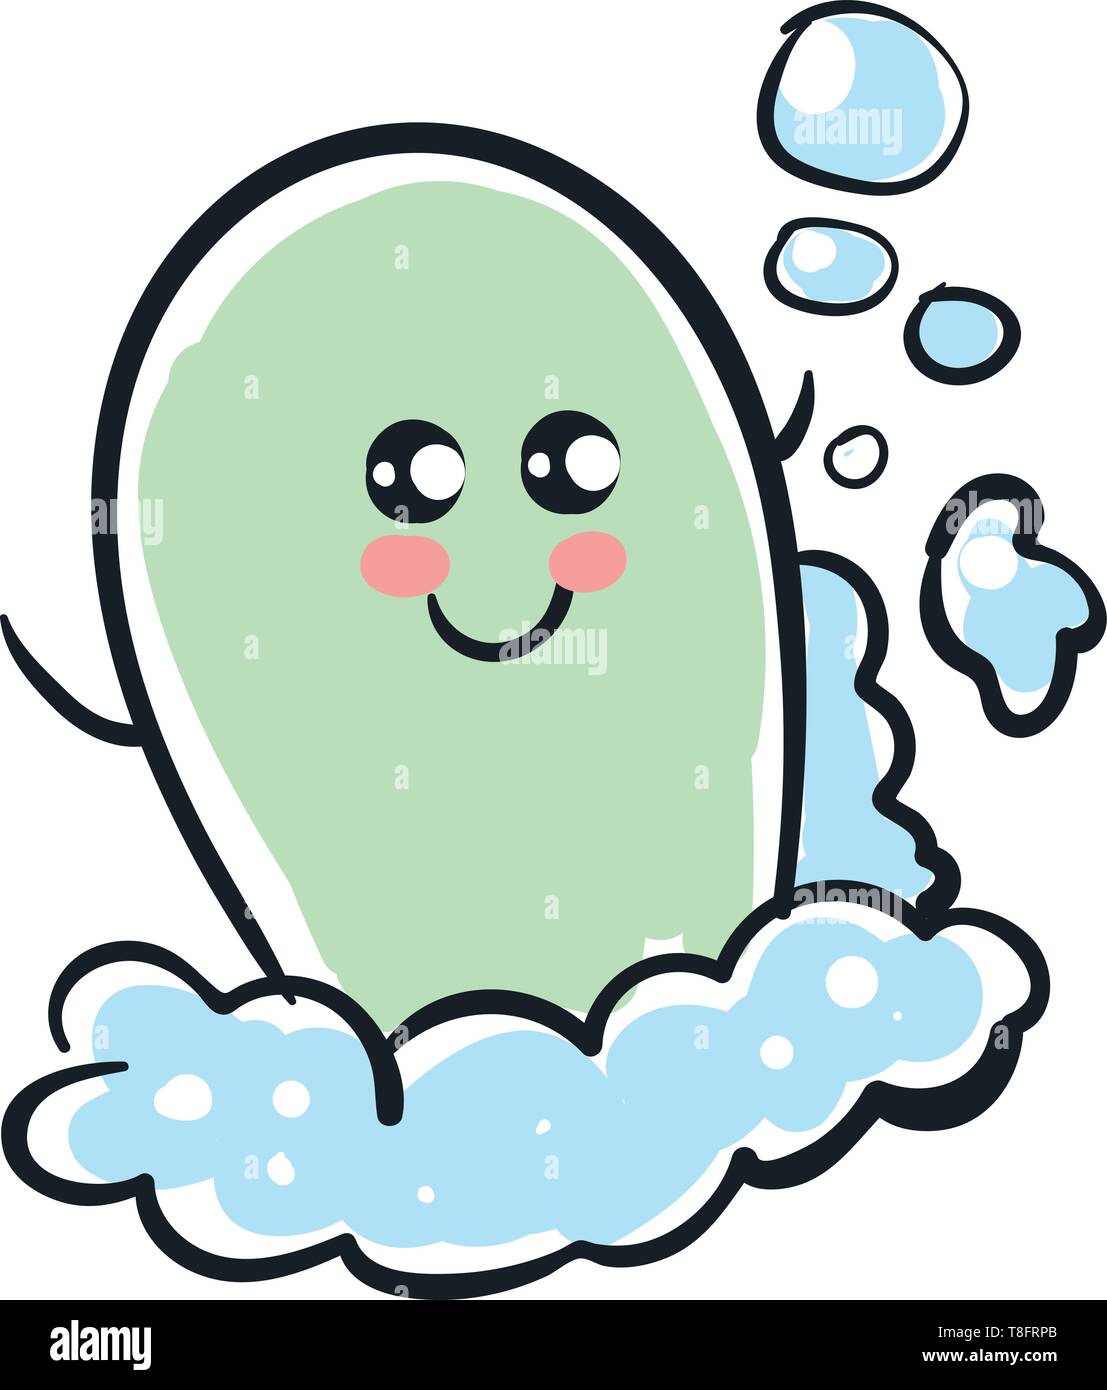 De l'Emoji un joli savon gris a un mignon petit visage avec deux yeux, en  haut à gauche et les mains grande ouverte bénéficie de l'eau tandis que des  bulles ou de